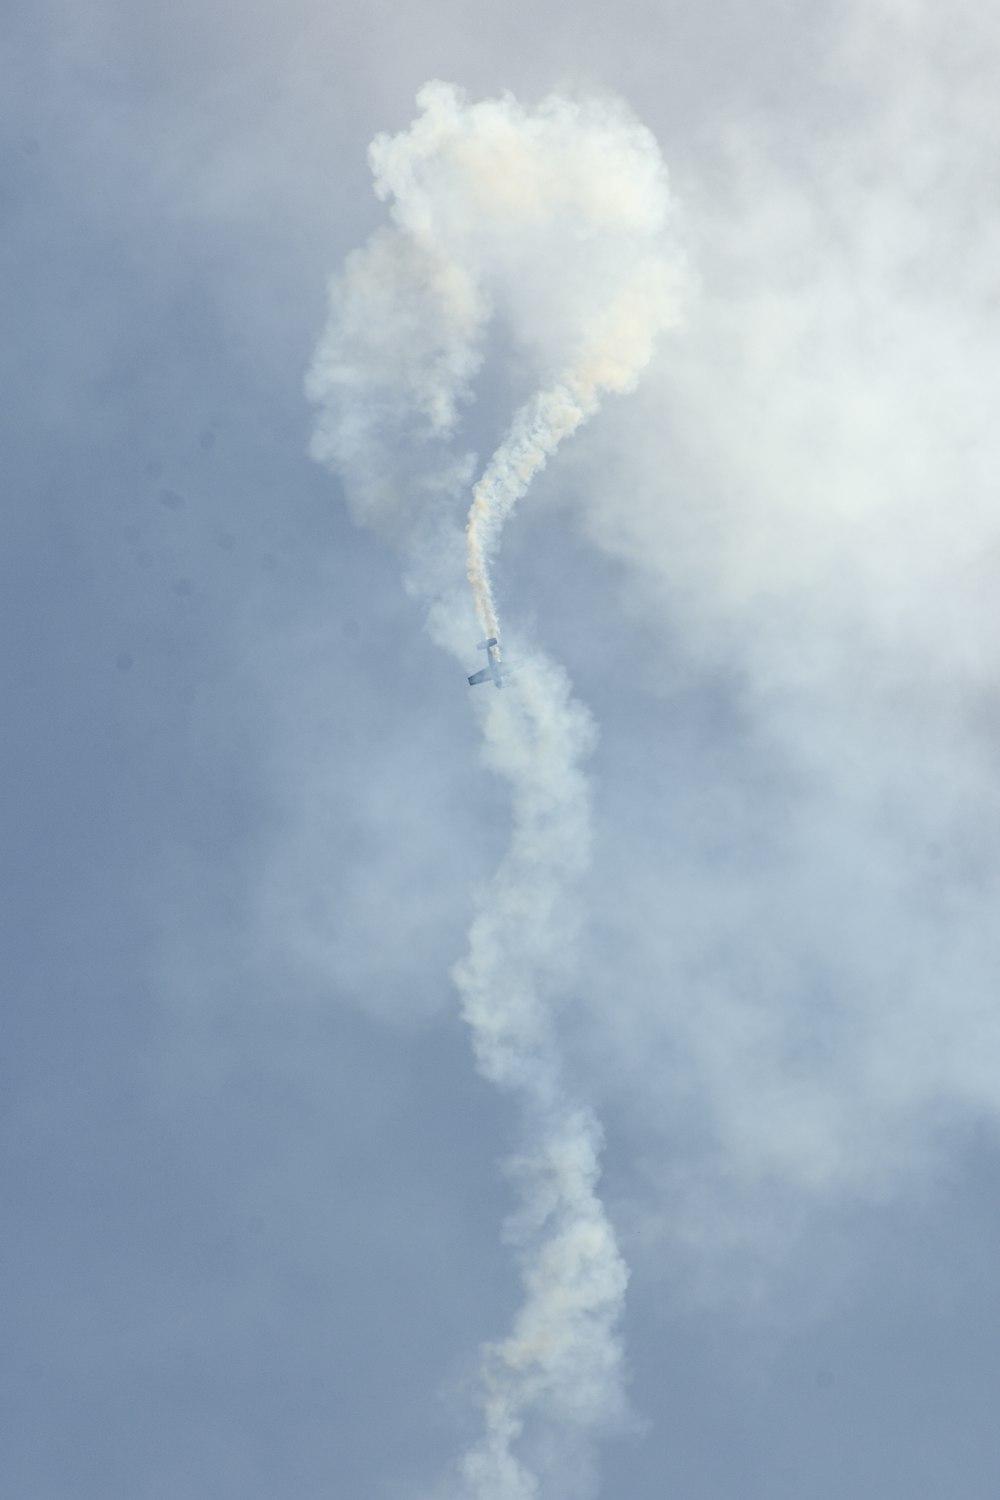 biplane bursting white smoke on air